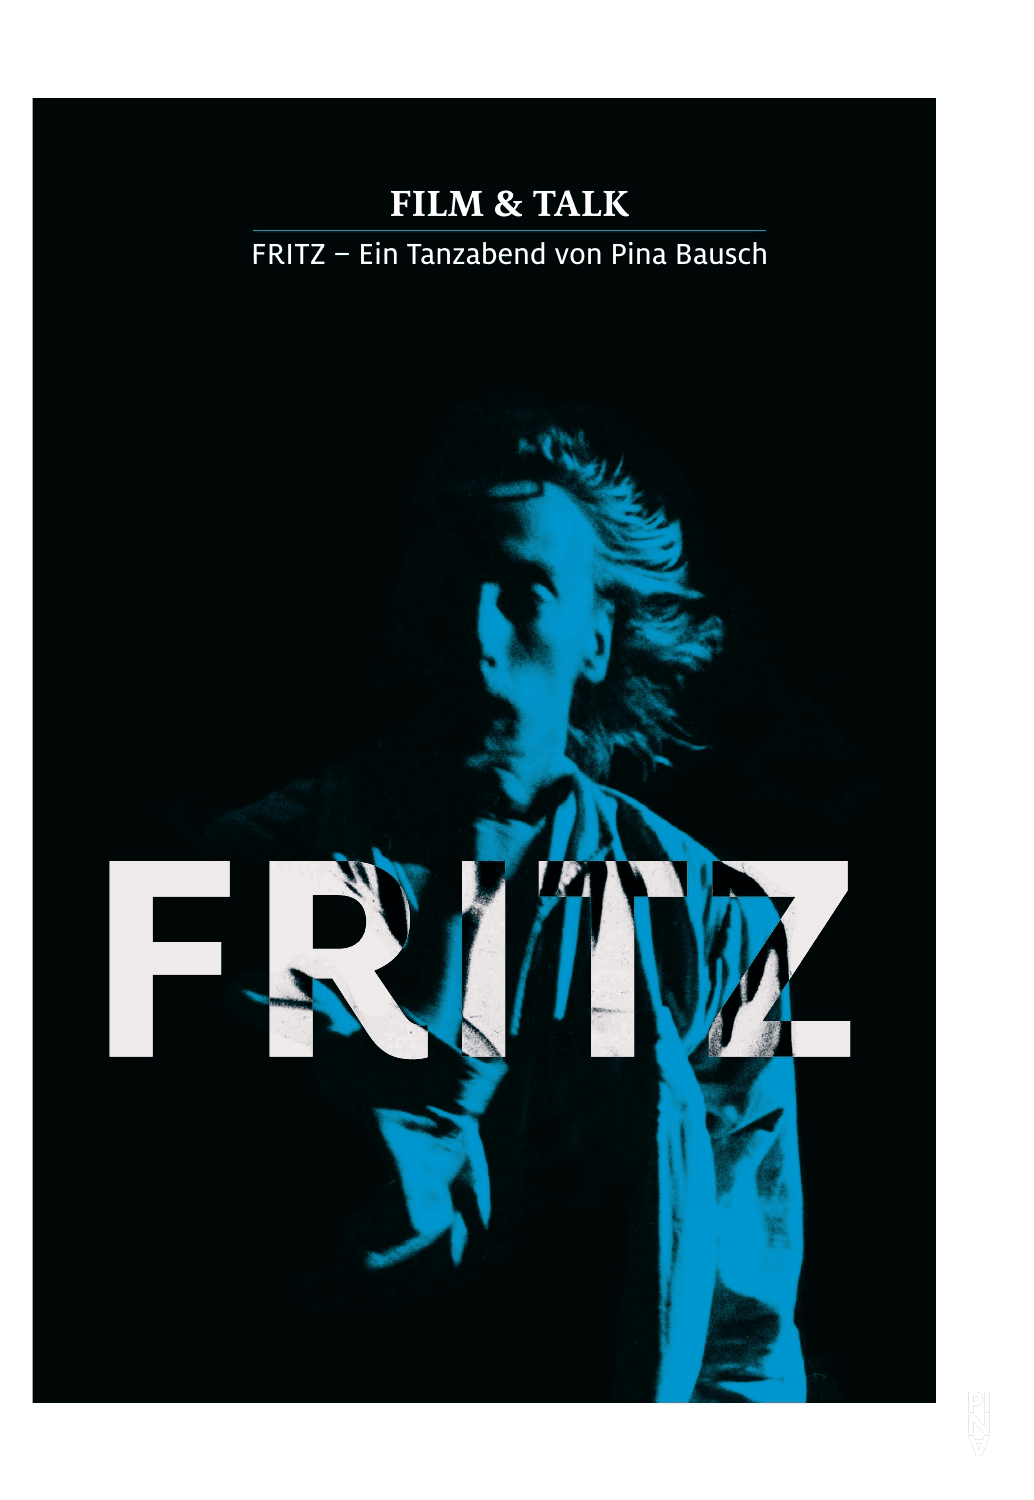 Programmheft zu Fritz – Ein Tanzabend von Pina Bausch, Film & Talk, 30. April 2015